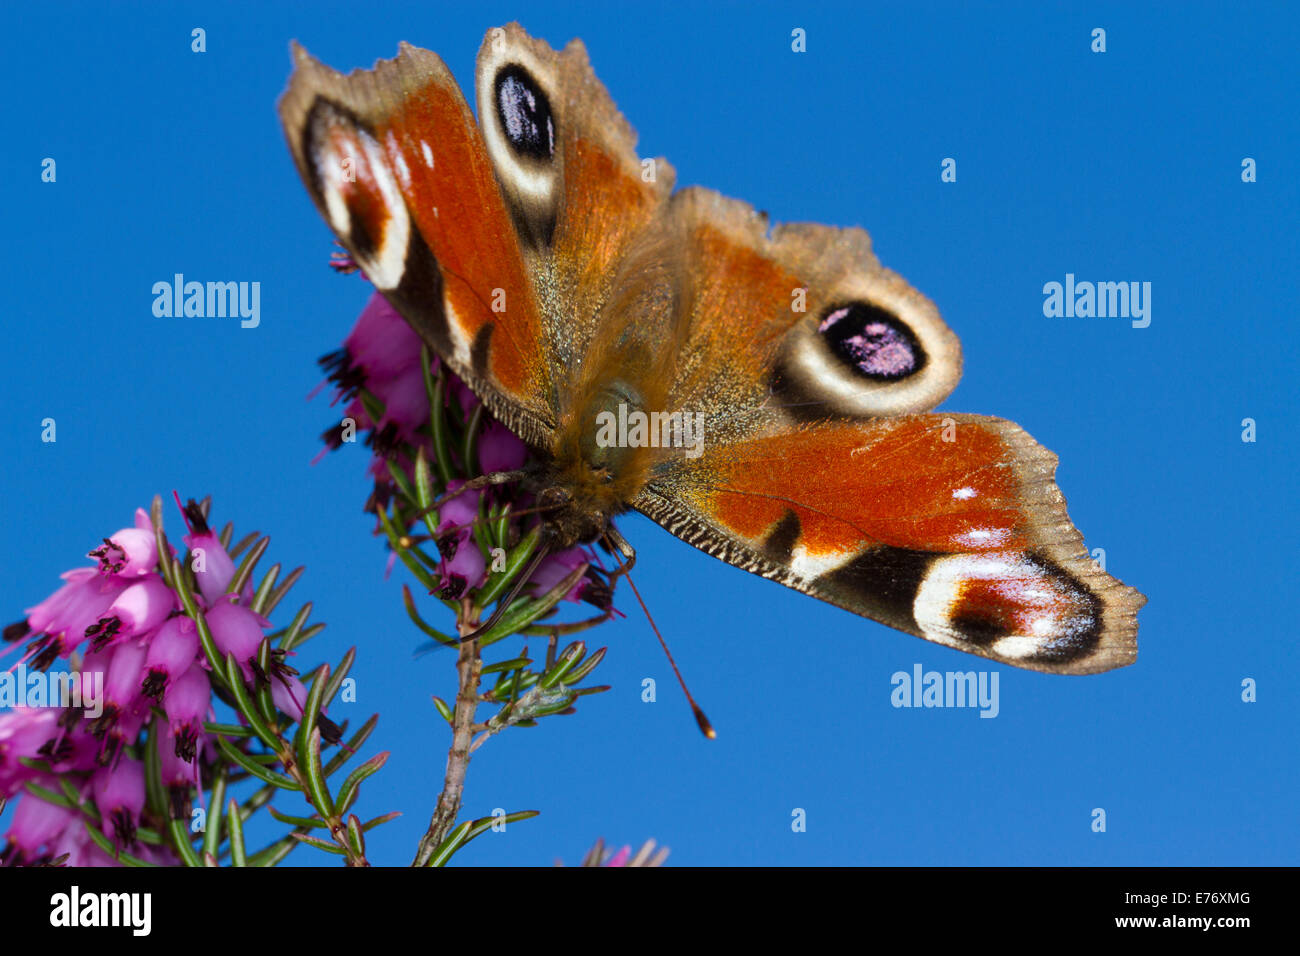 Mariposa pavo real (Aglais io) adulto alimentándose en invierno-floración heather, Erica × darleyensis en un jardín. Powys, Gales. De marzo. Foto de stock